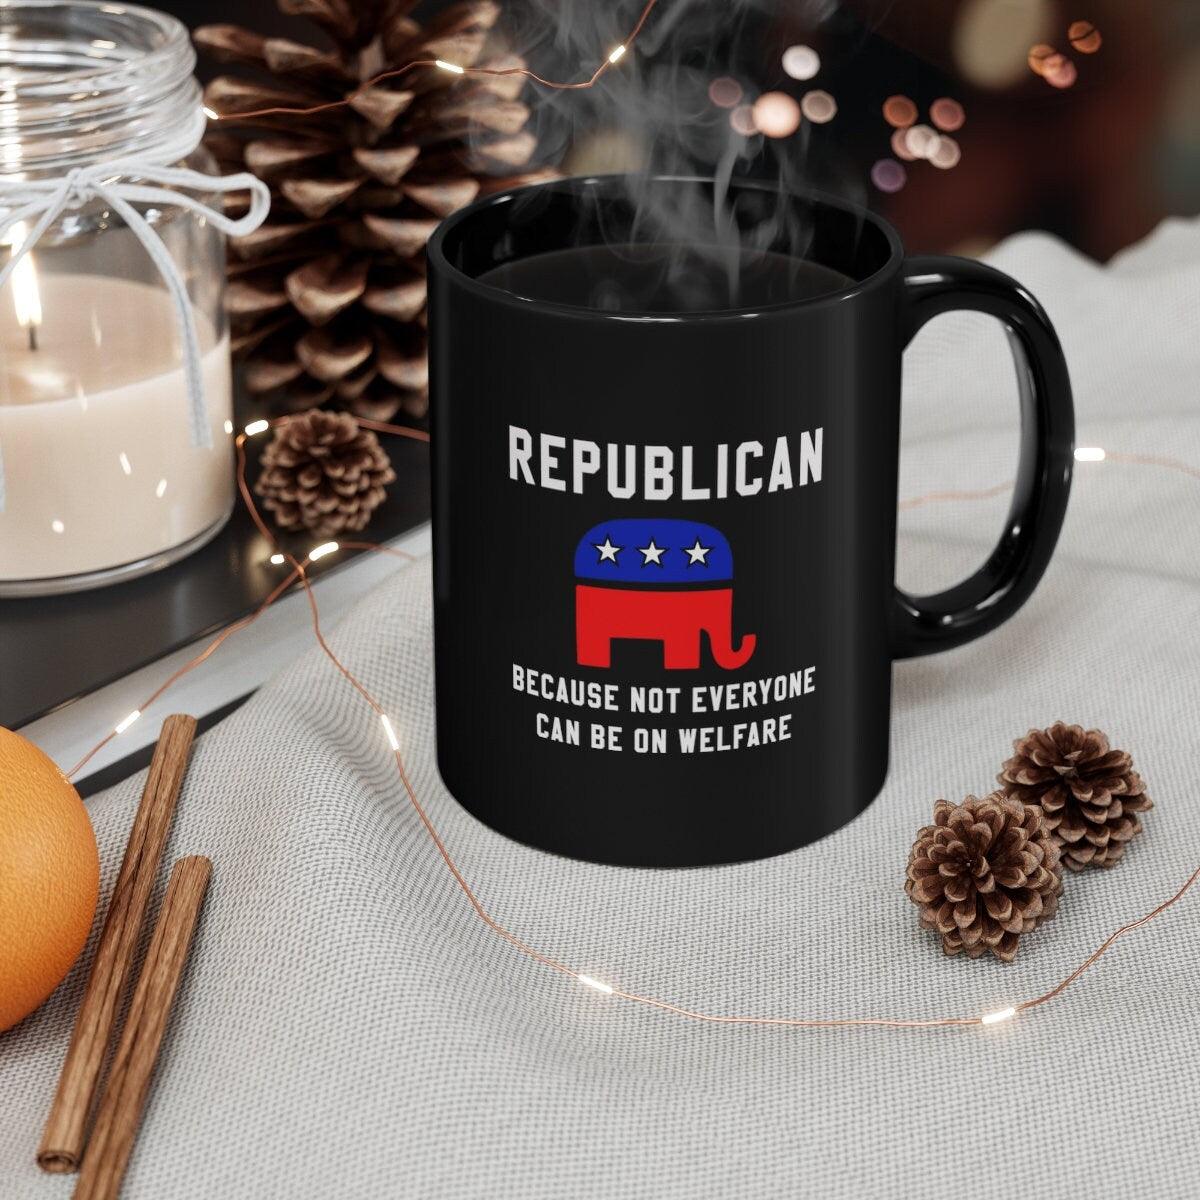 Републикански јер не могу сви да буду на кафи за благостање, Републикански поклон, Политичка шоља, подигнута републиканска, Графика слона, политичка шоља - плусминусцо.цом